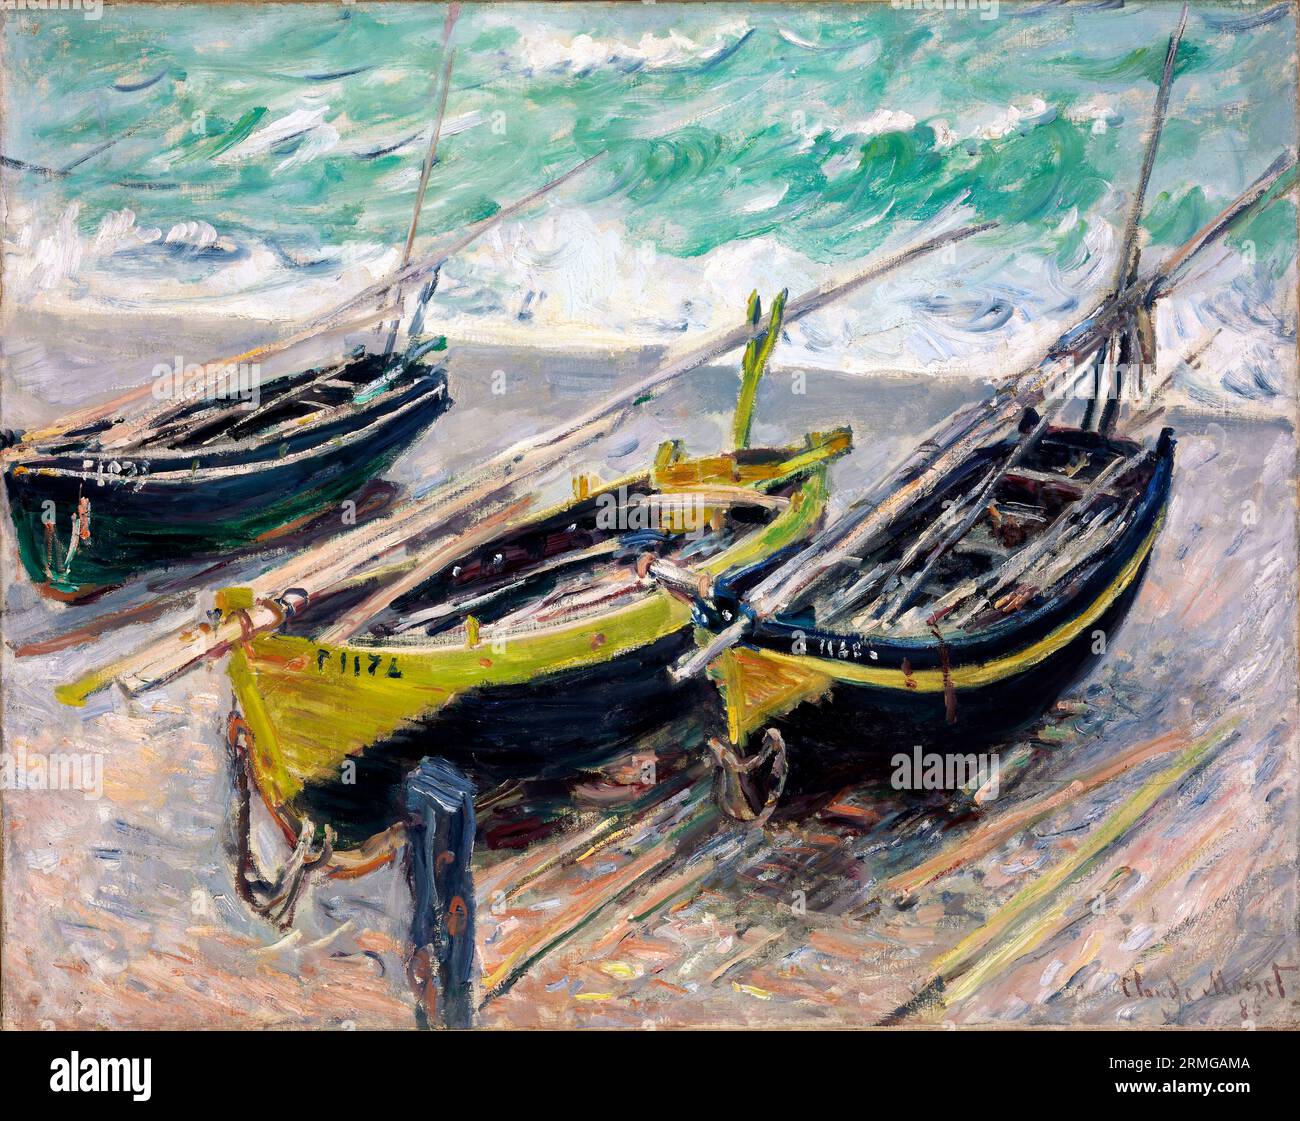 Drei Fischerboote von Claude Monet (1840-1926), Öl auf Leinwand, 1886 Stockfoto